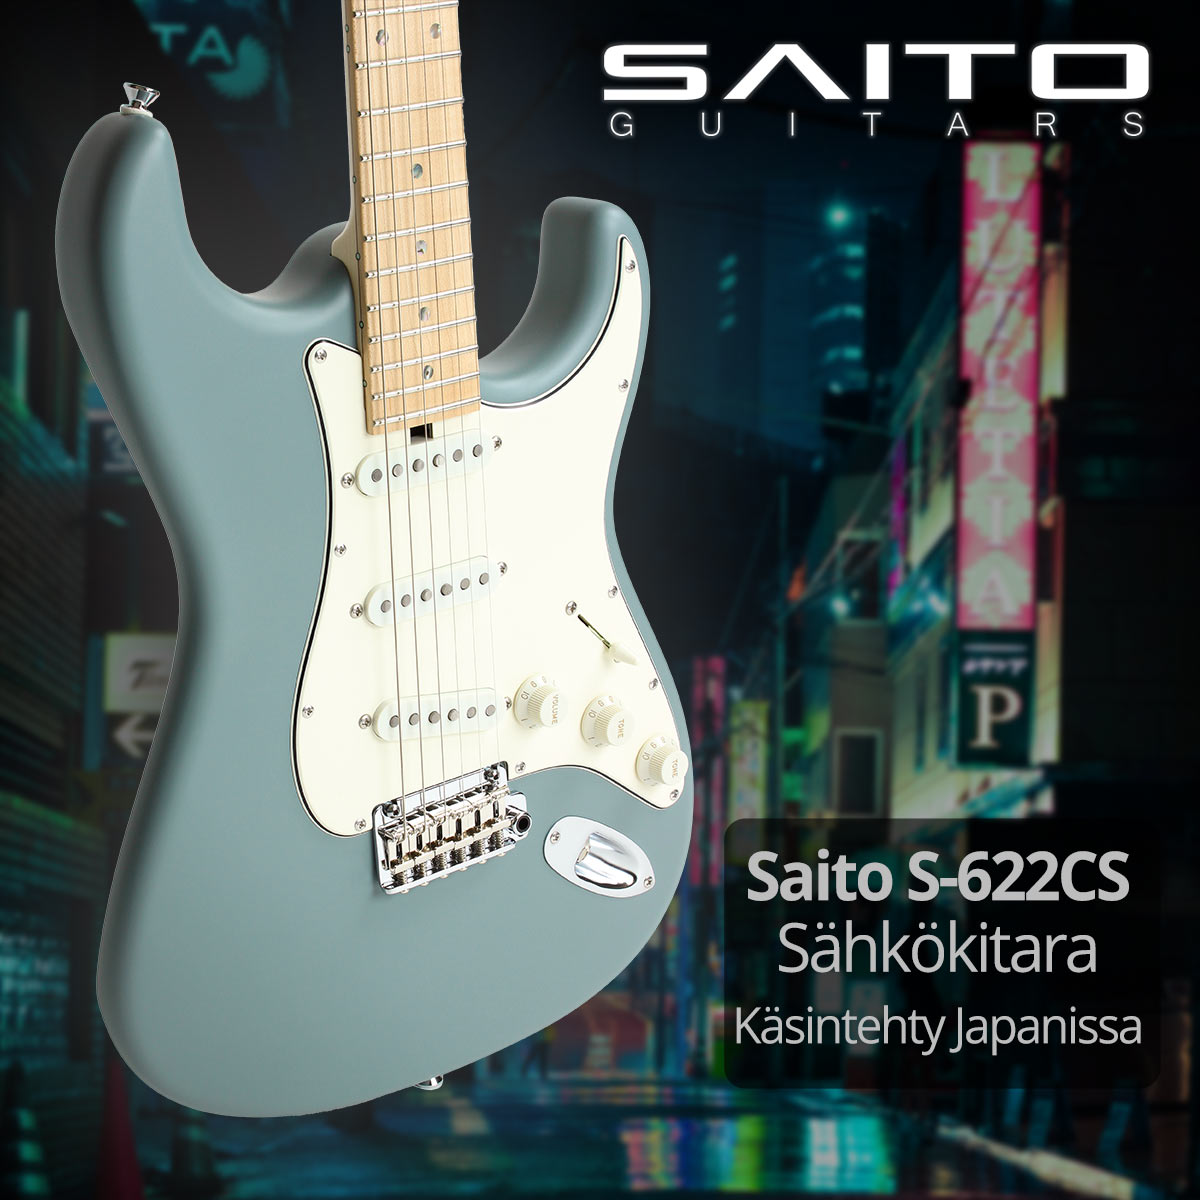 Saito S-622CS